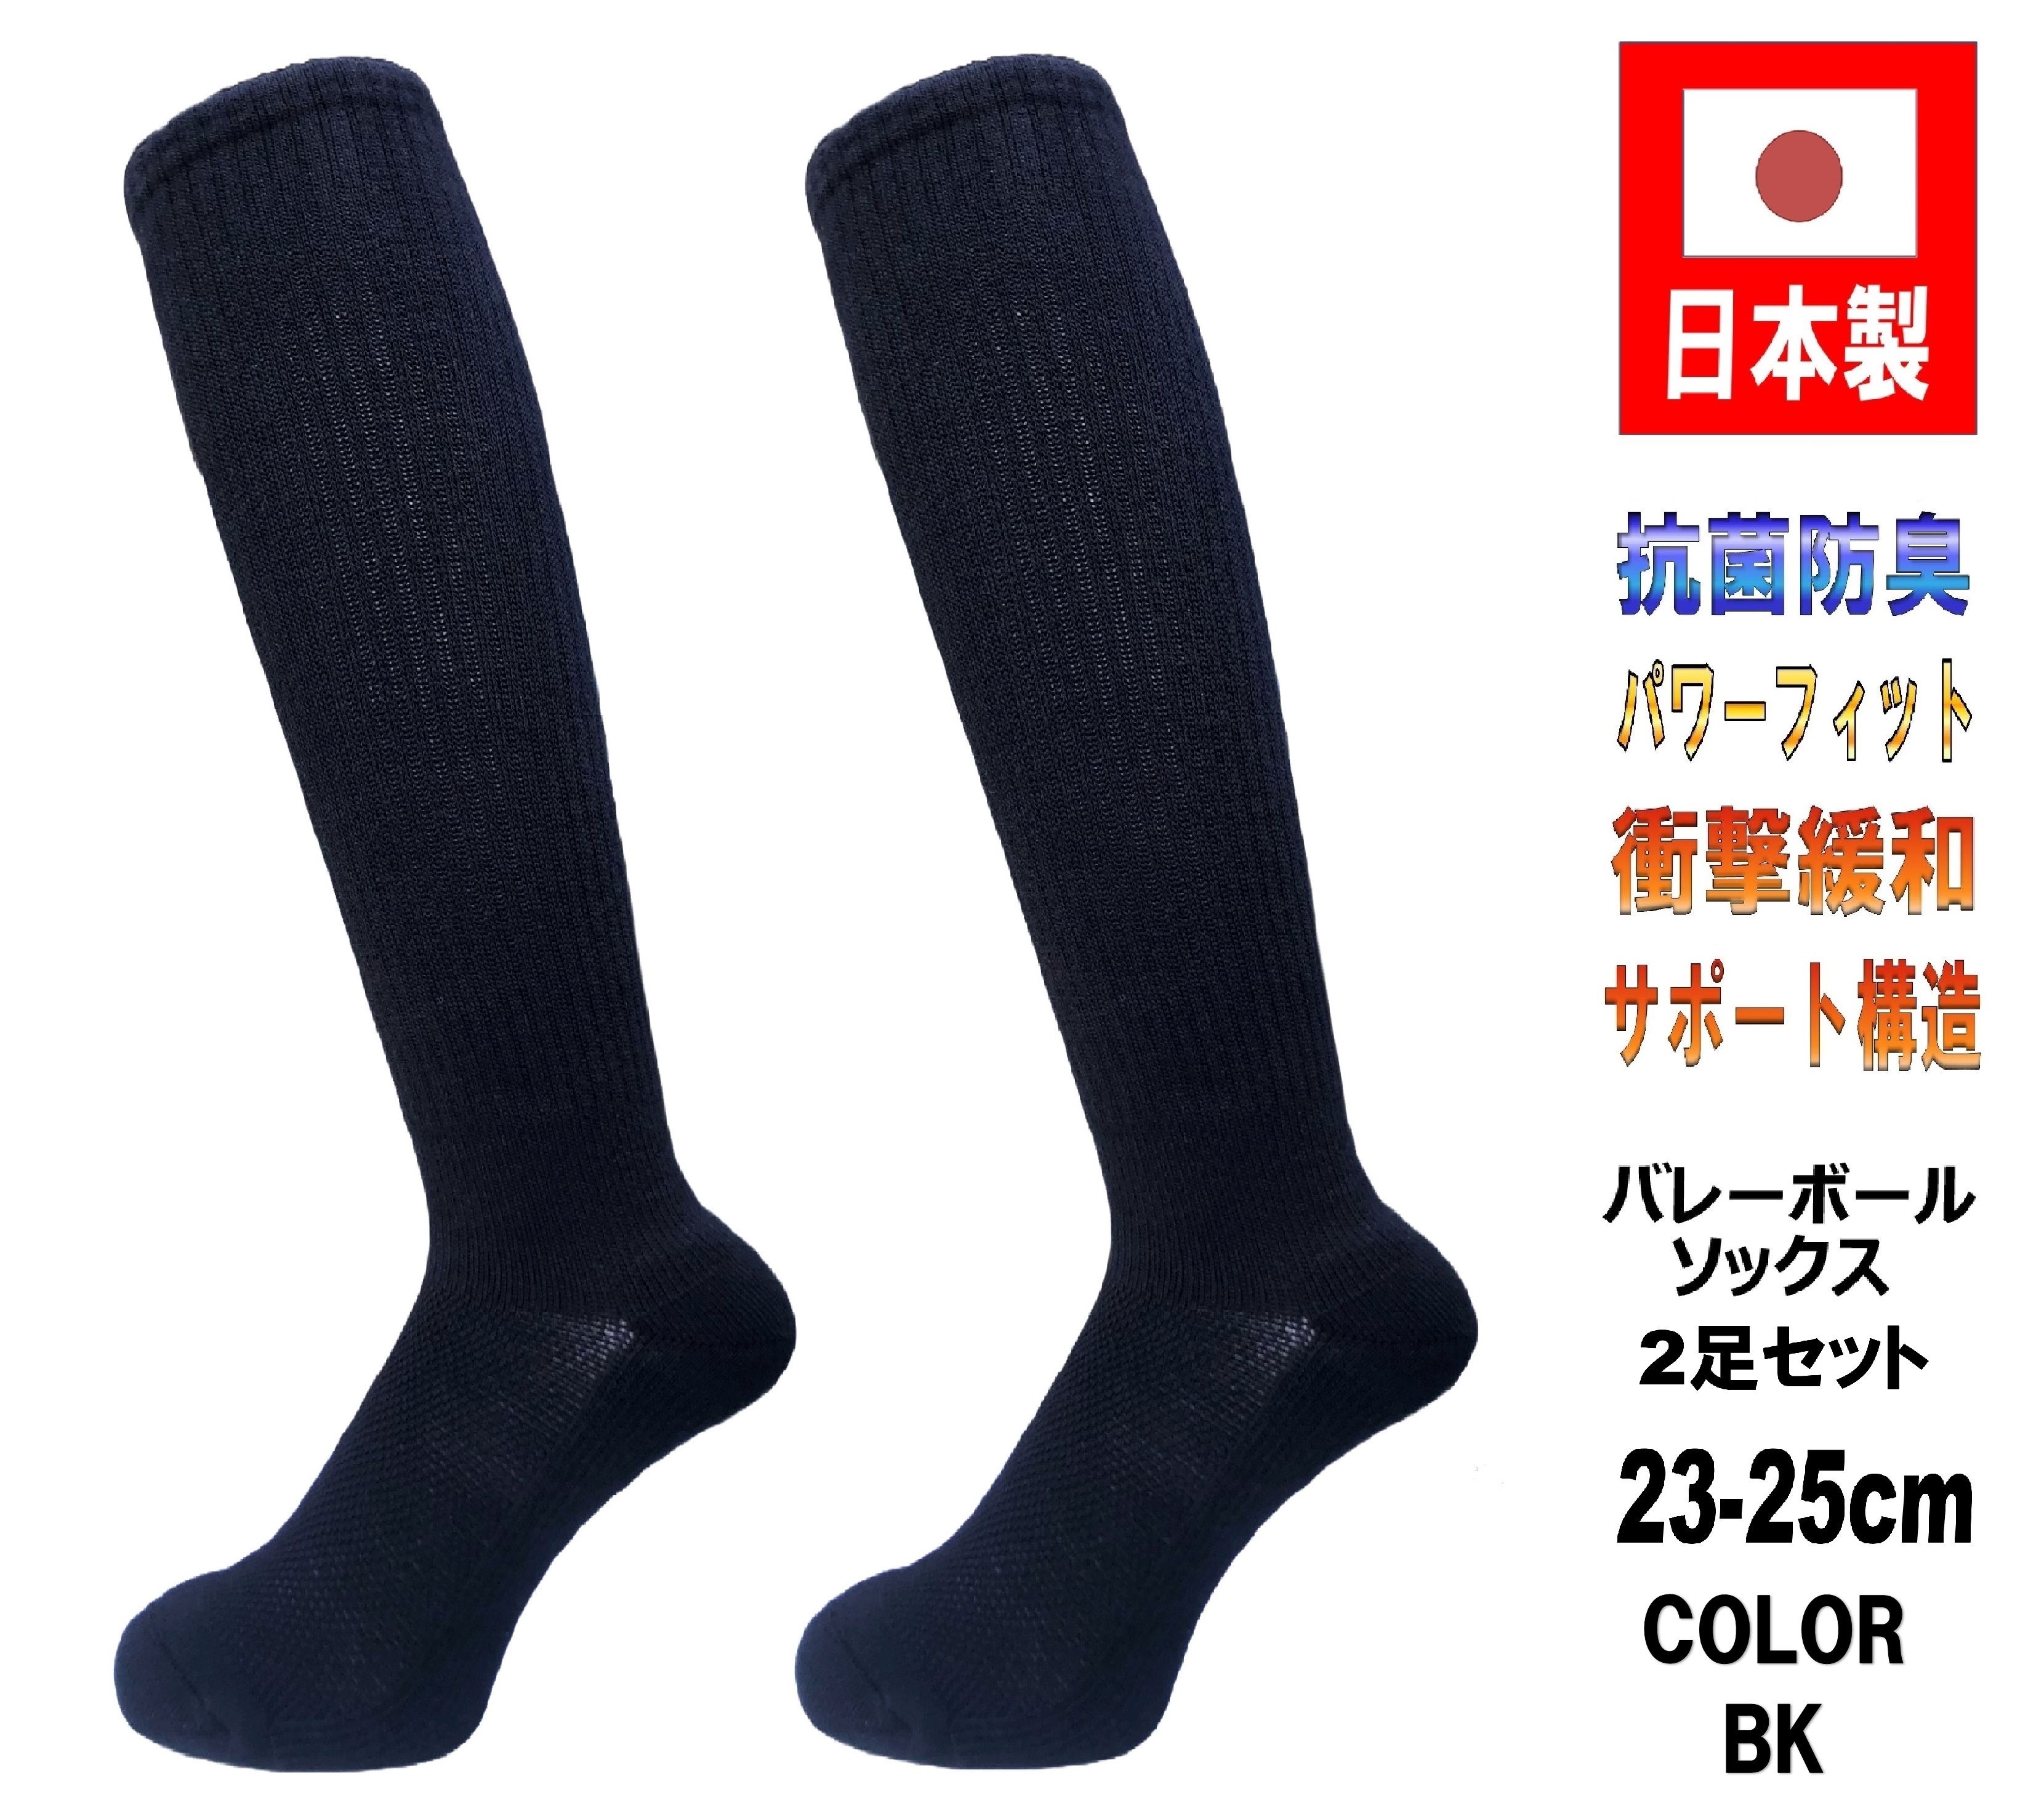 日本製 バレーボールソックス 23-25cm 2足1セット 抗菌防臭機能付 5カラー